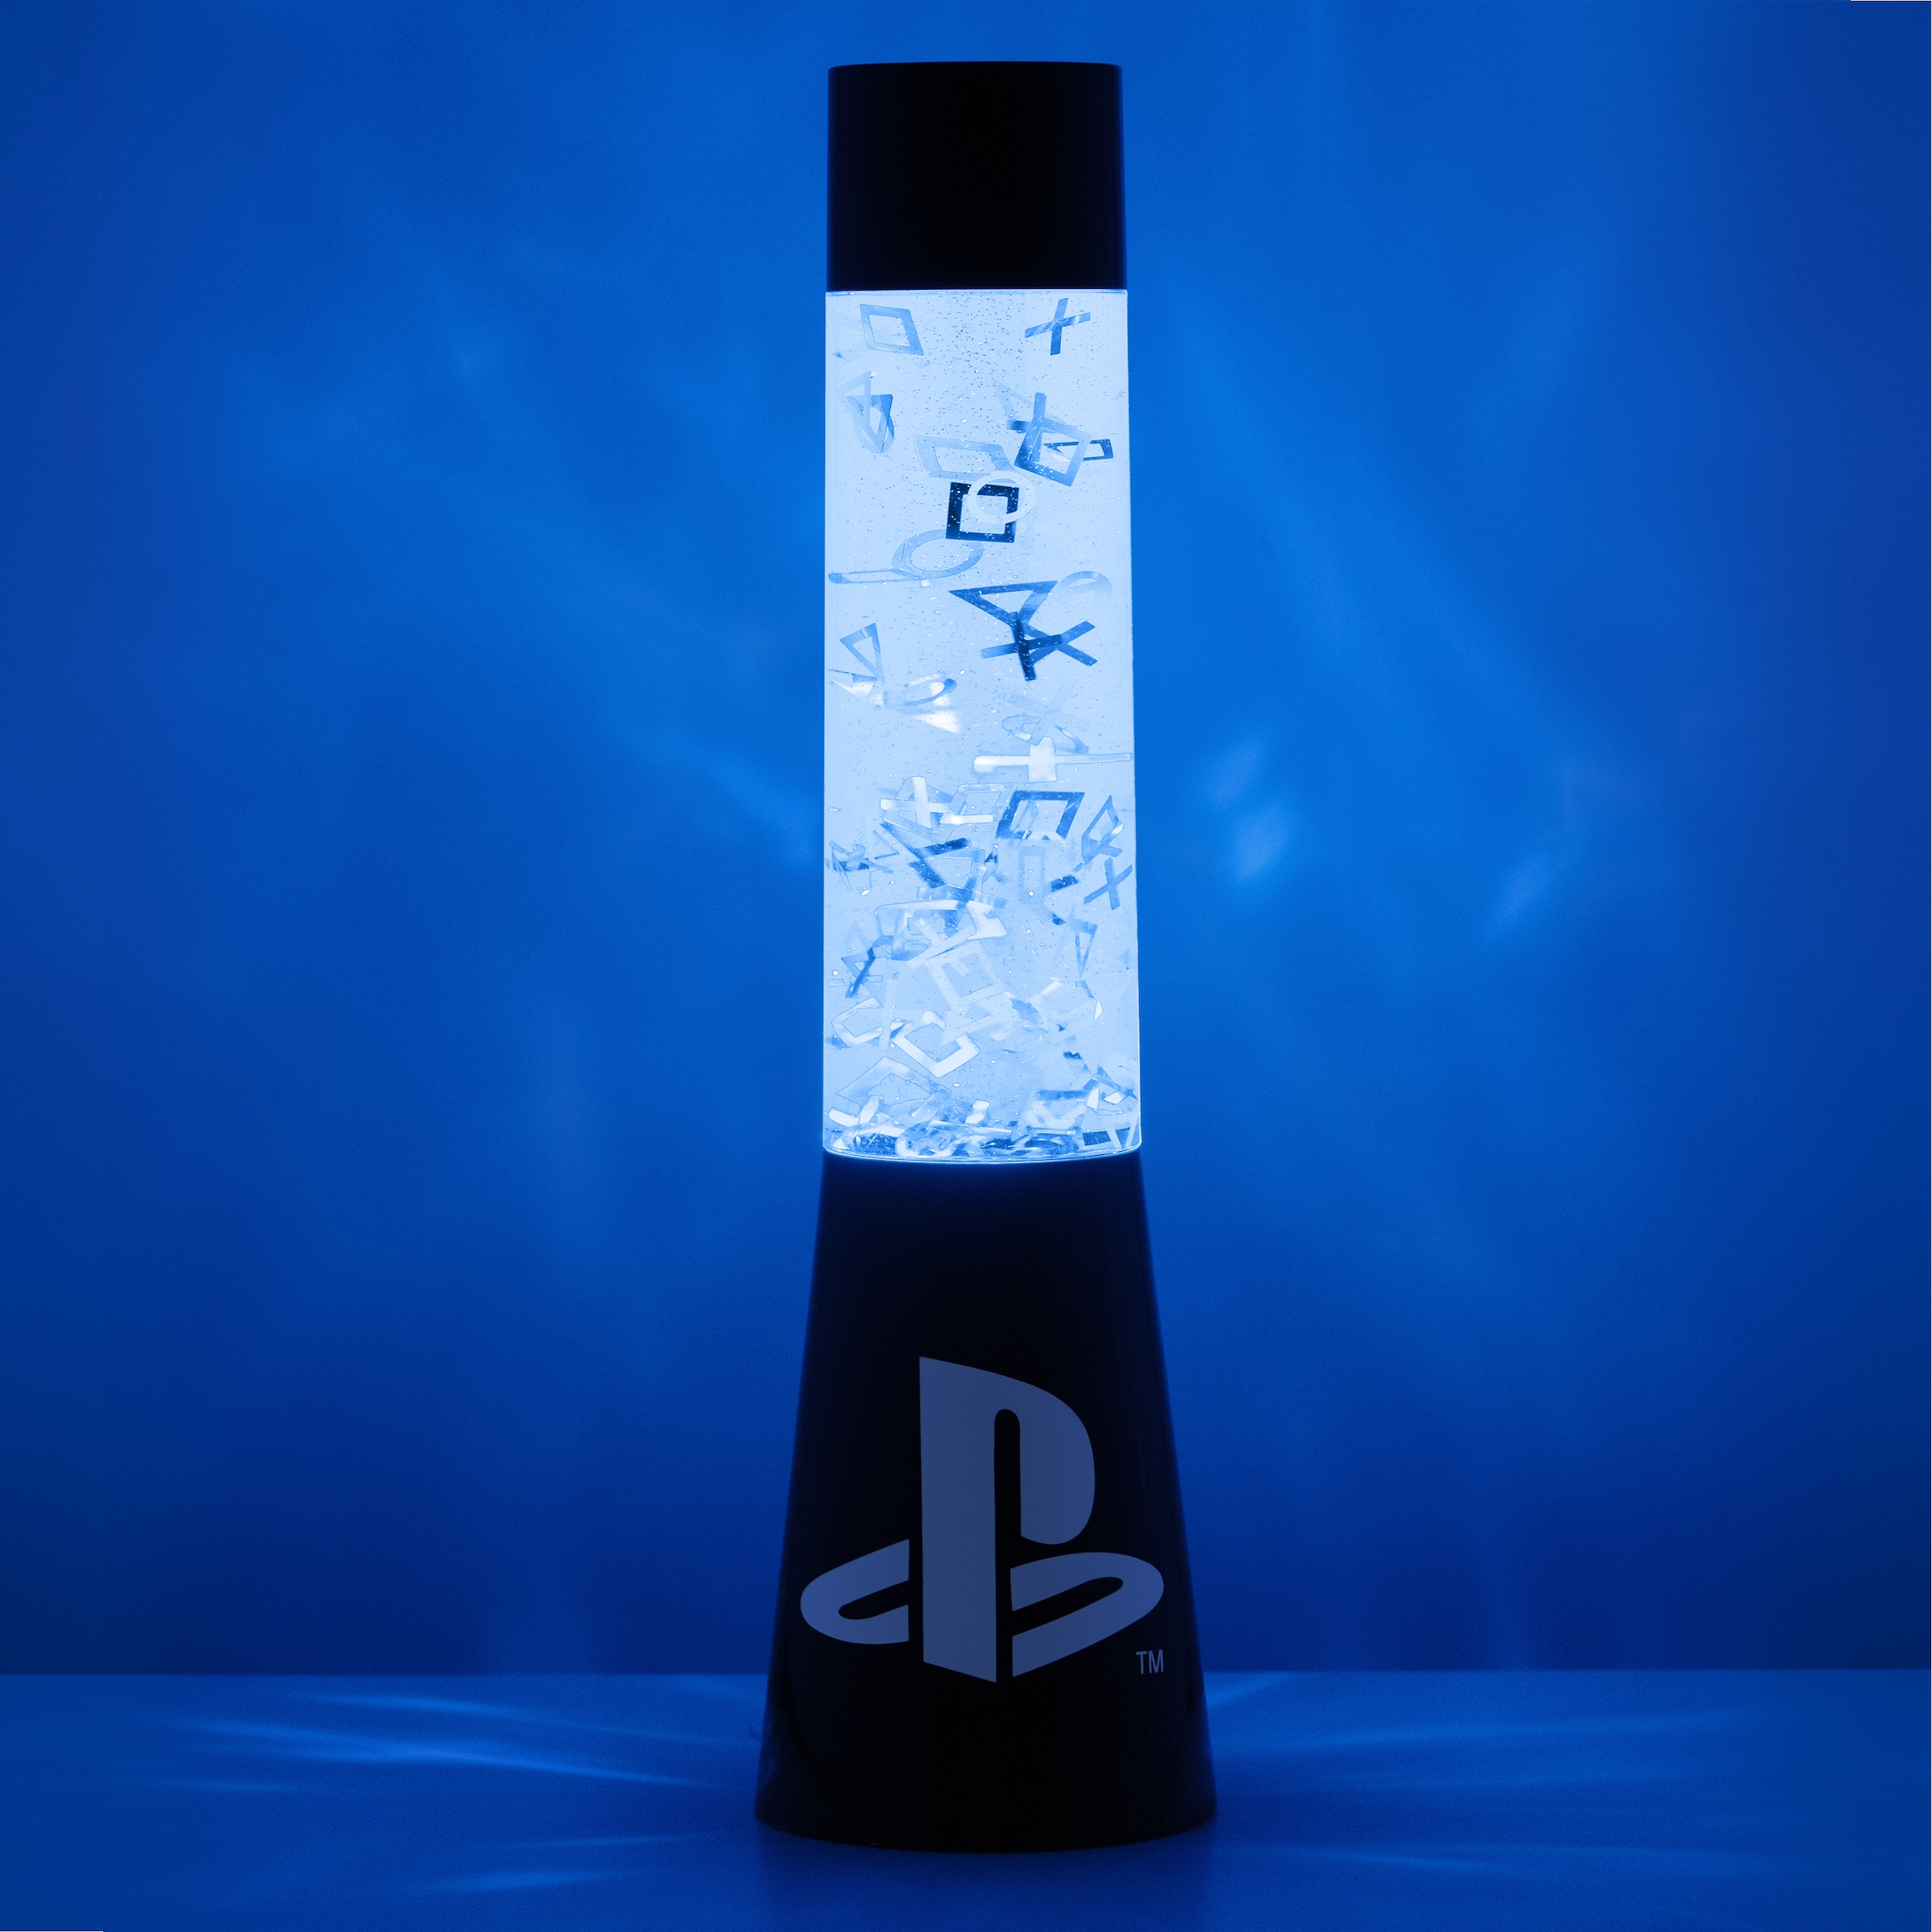 Paladone LED Dekolicht »Playstation Kunststoff Lavalampe / Glitzerlampe«  kaufen | BAUR